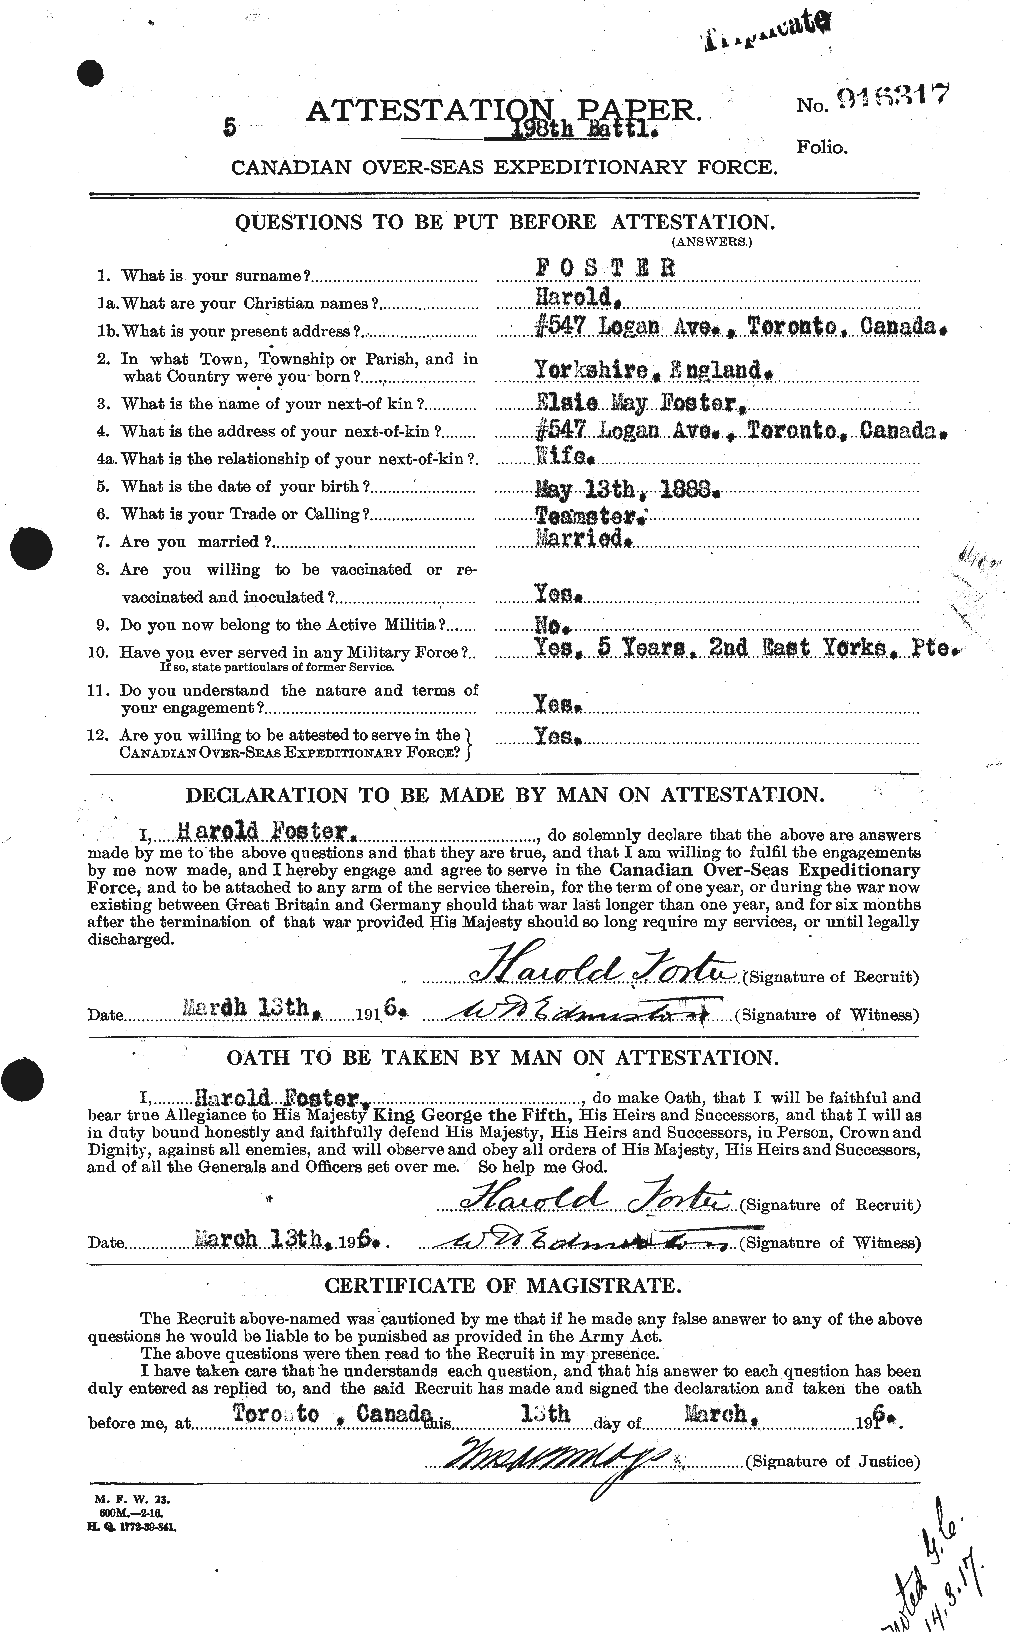 Dossiers du Personnel de la Première Guerre mondiale - CEC 330726a